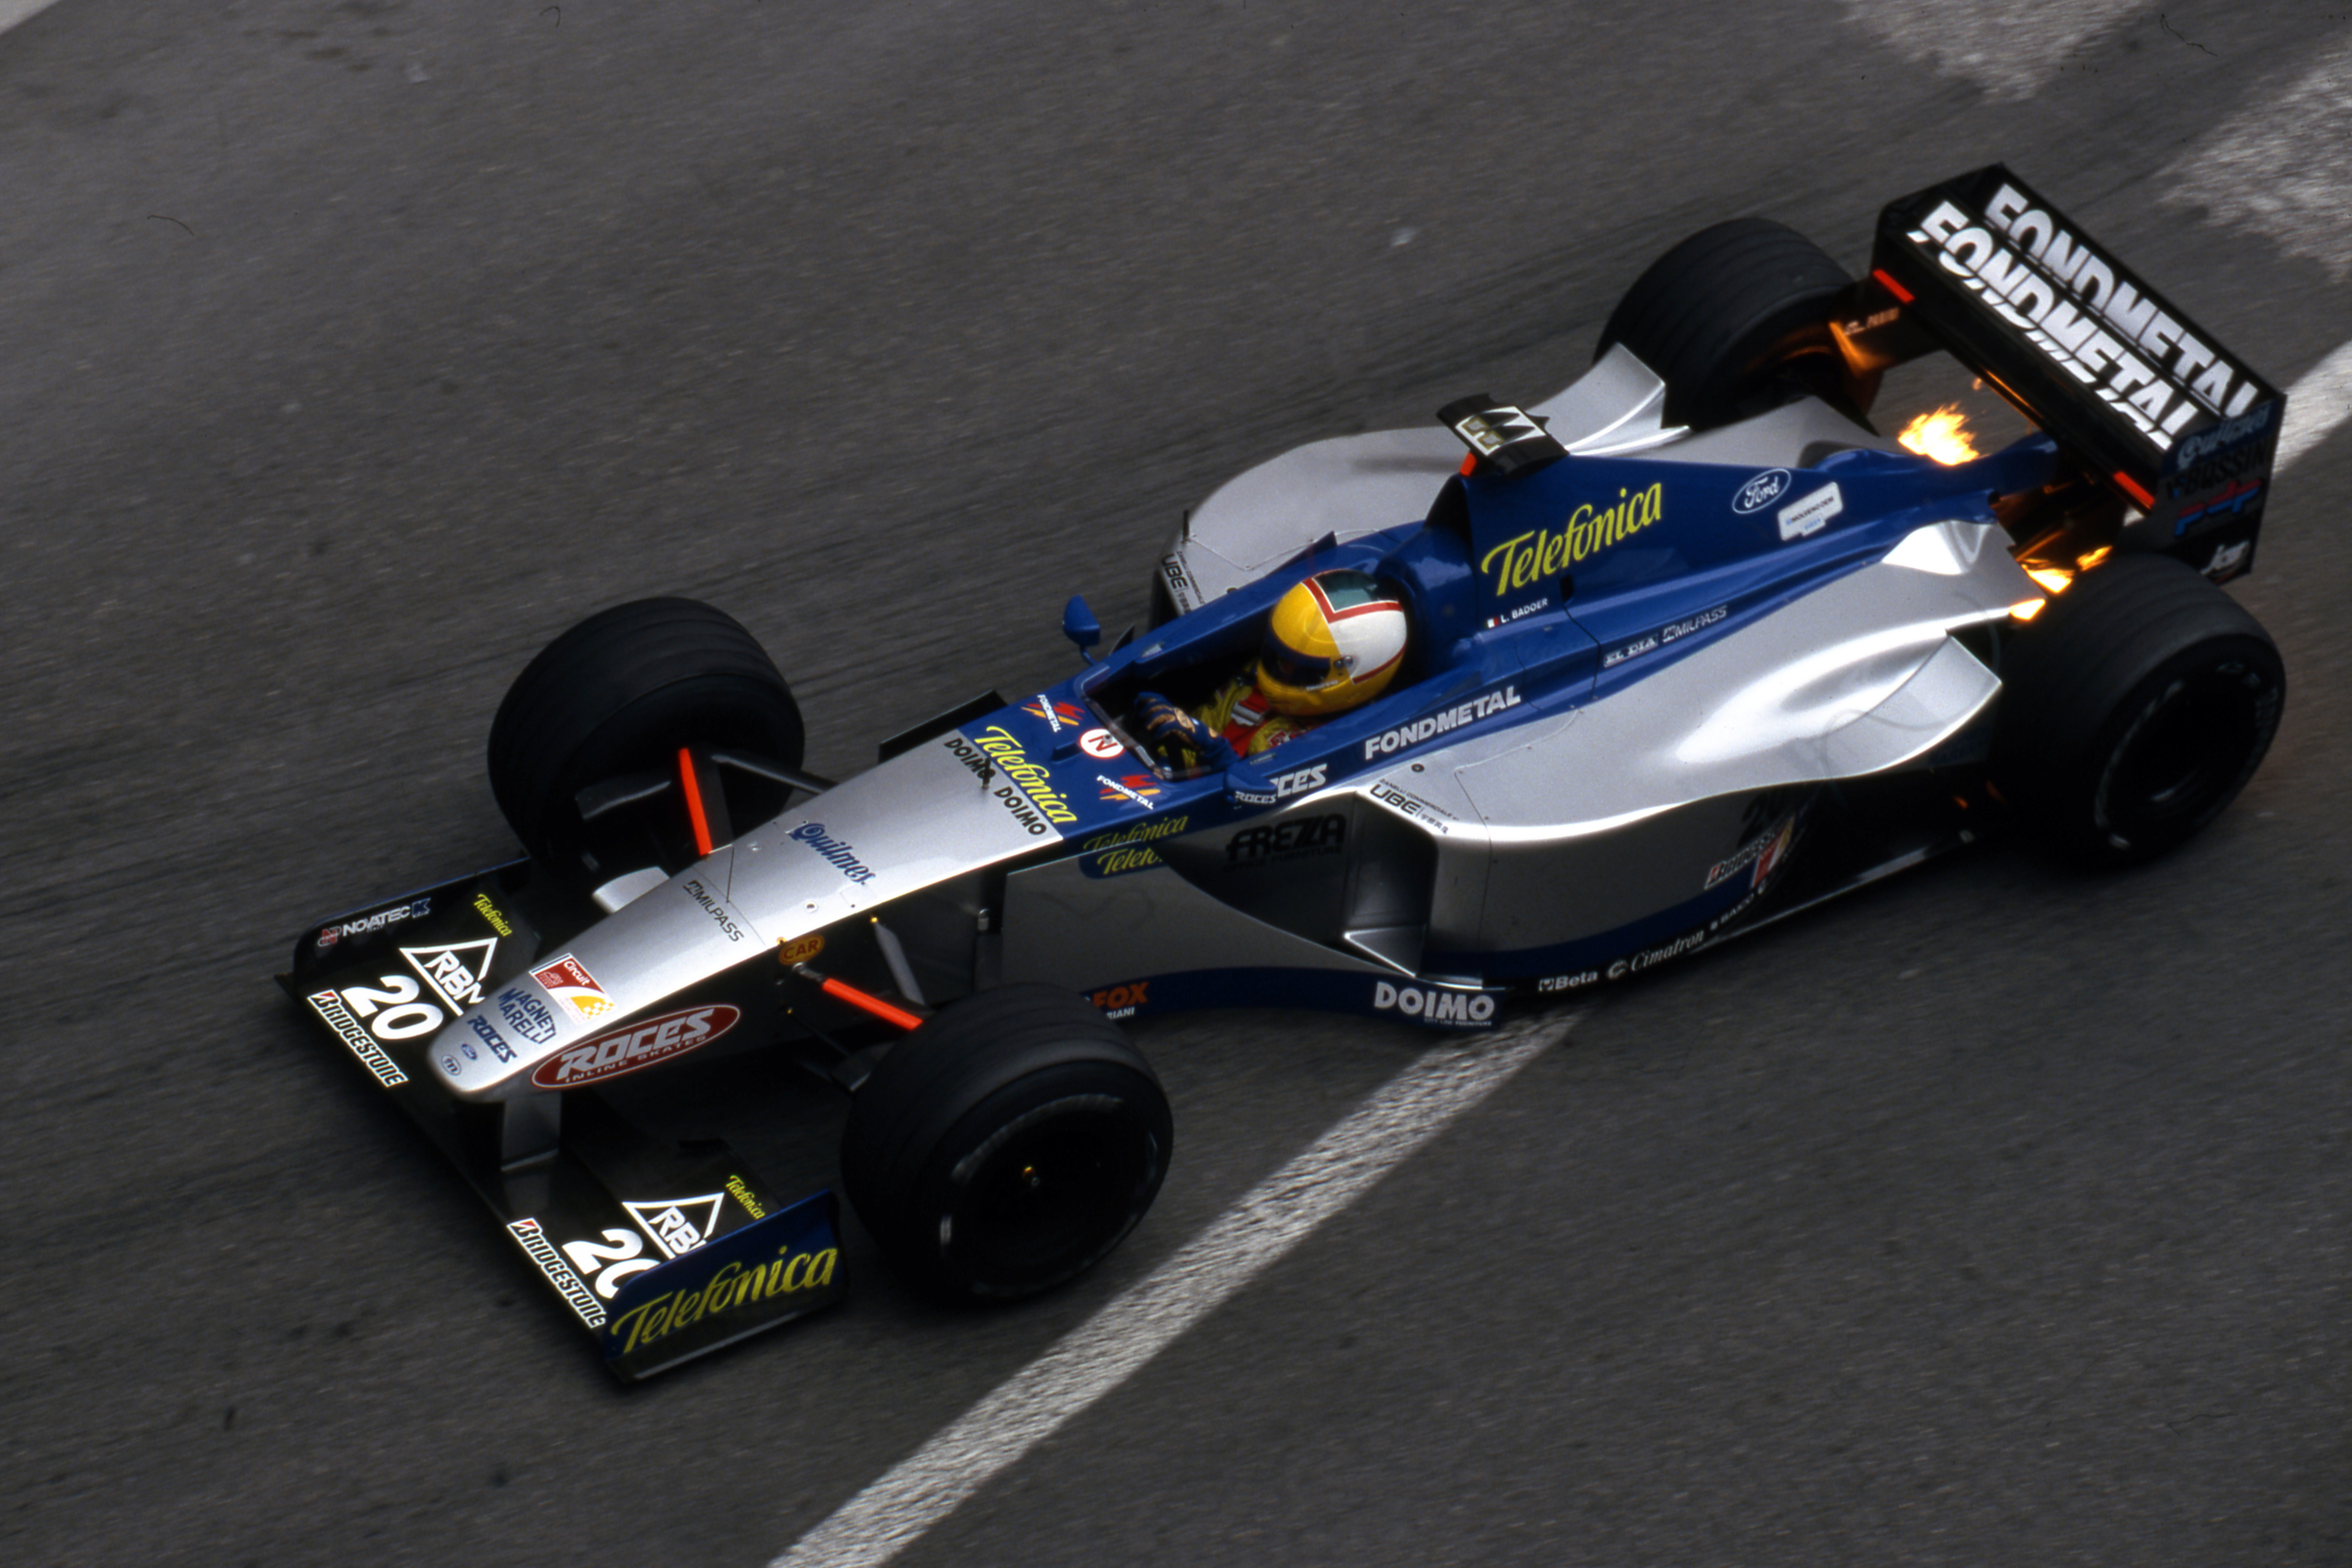 Monaco Grand Prix Monte Carlo (mc) 13 16 05 1999